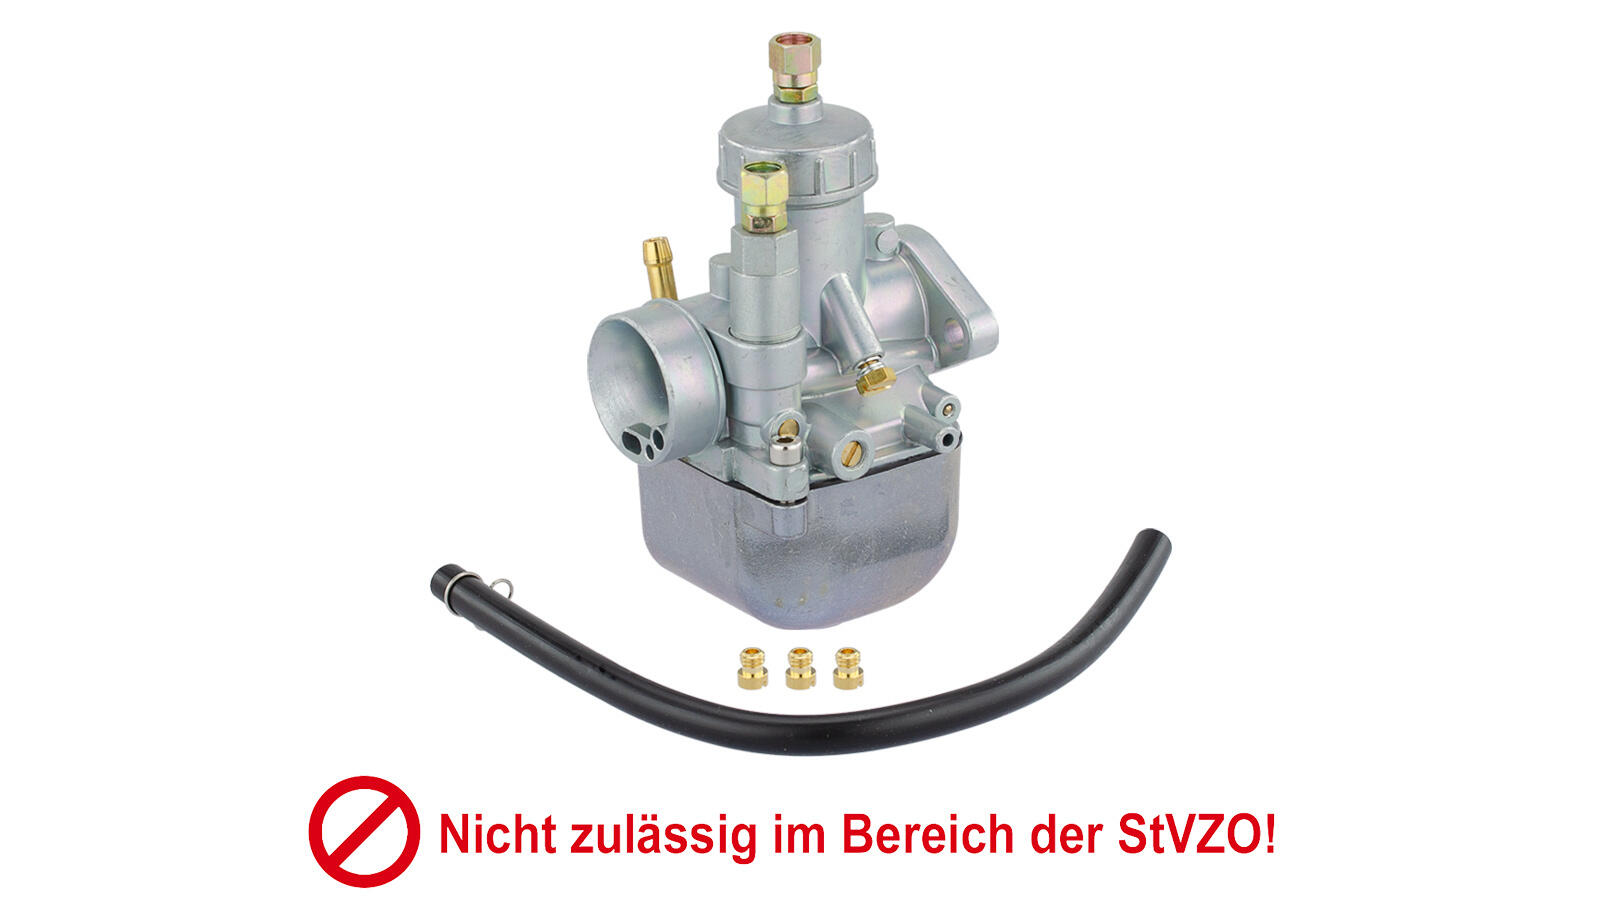 ZT Tuningvergaser 16N1-11 GEN2  für S50, S51, S70 **